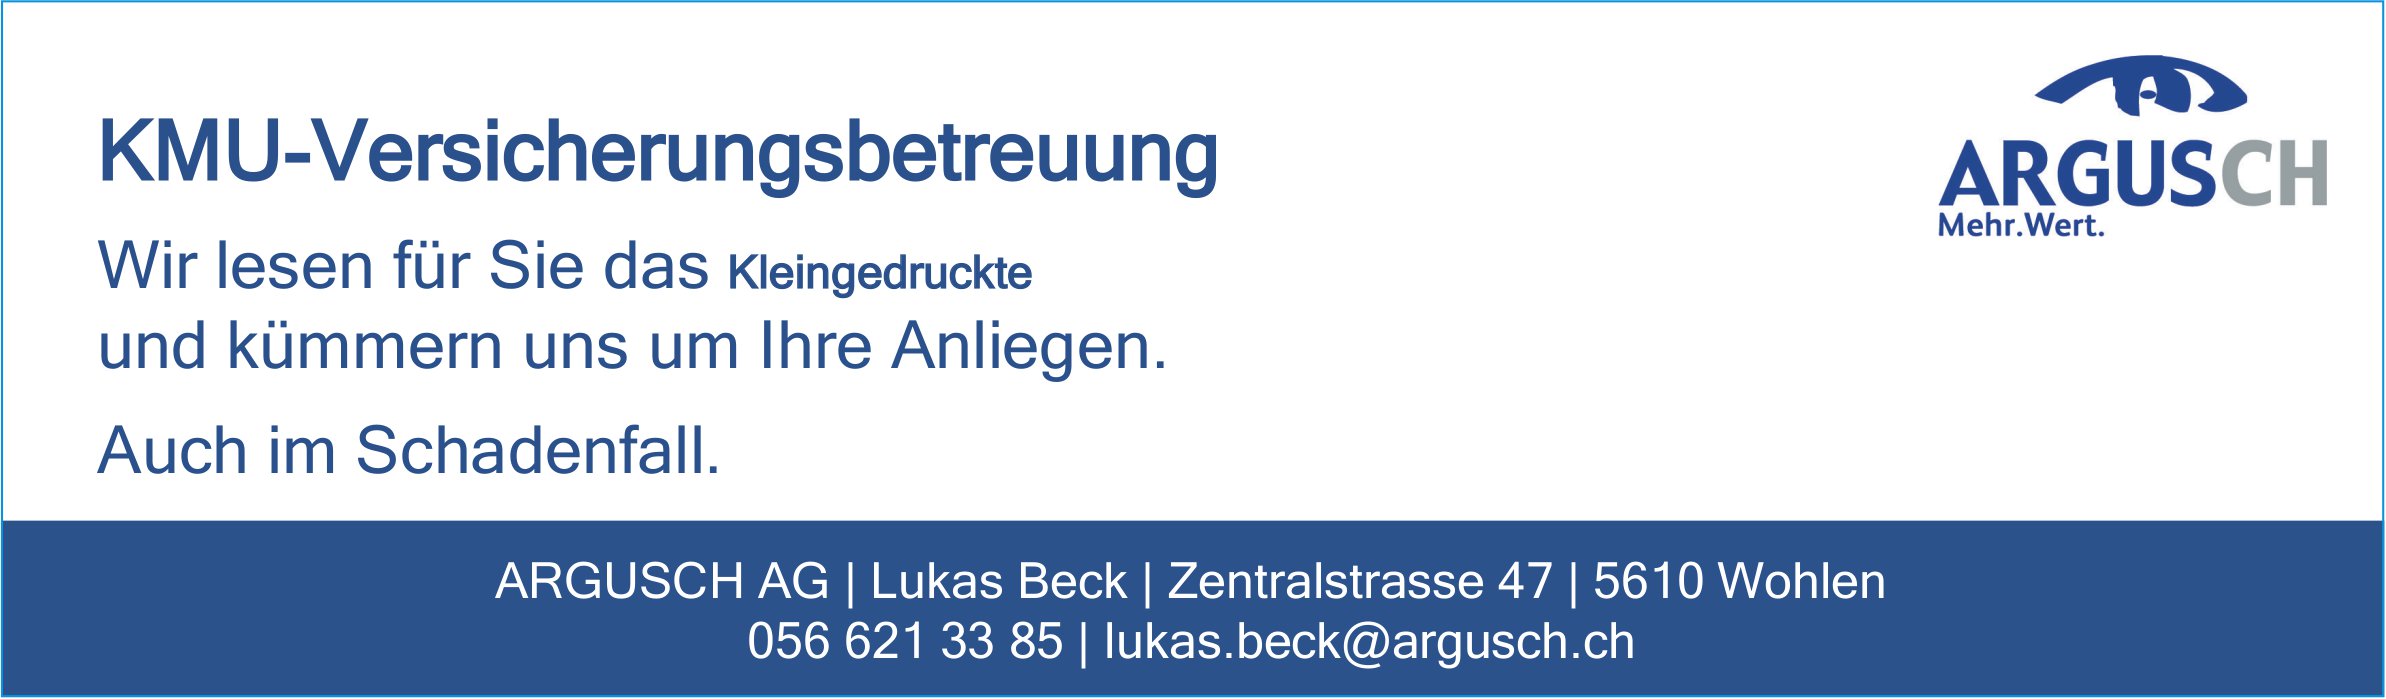 ARGUSCH AG, Wohlen - KMU-Versicherungsbetreuung